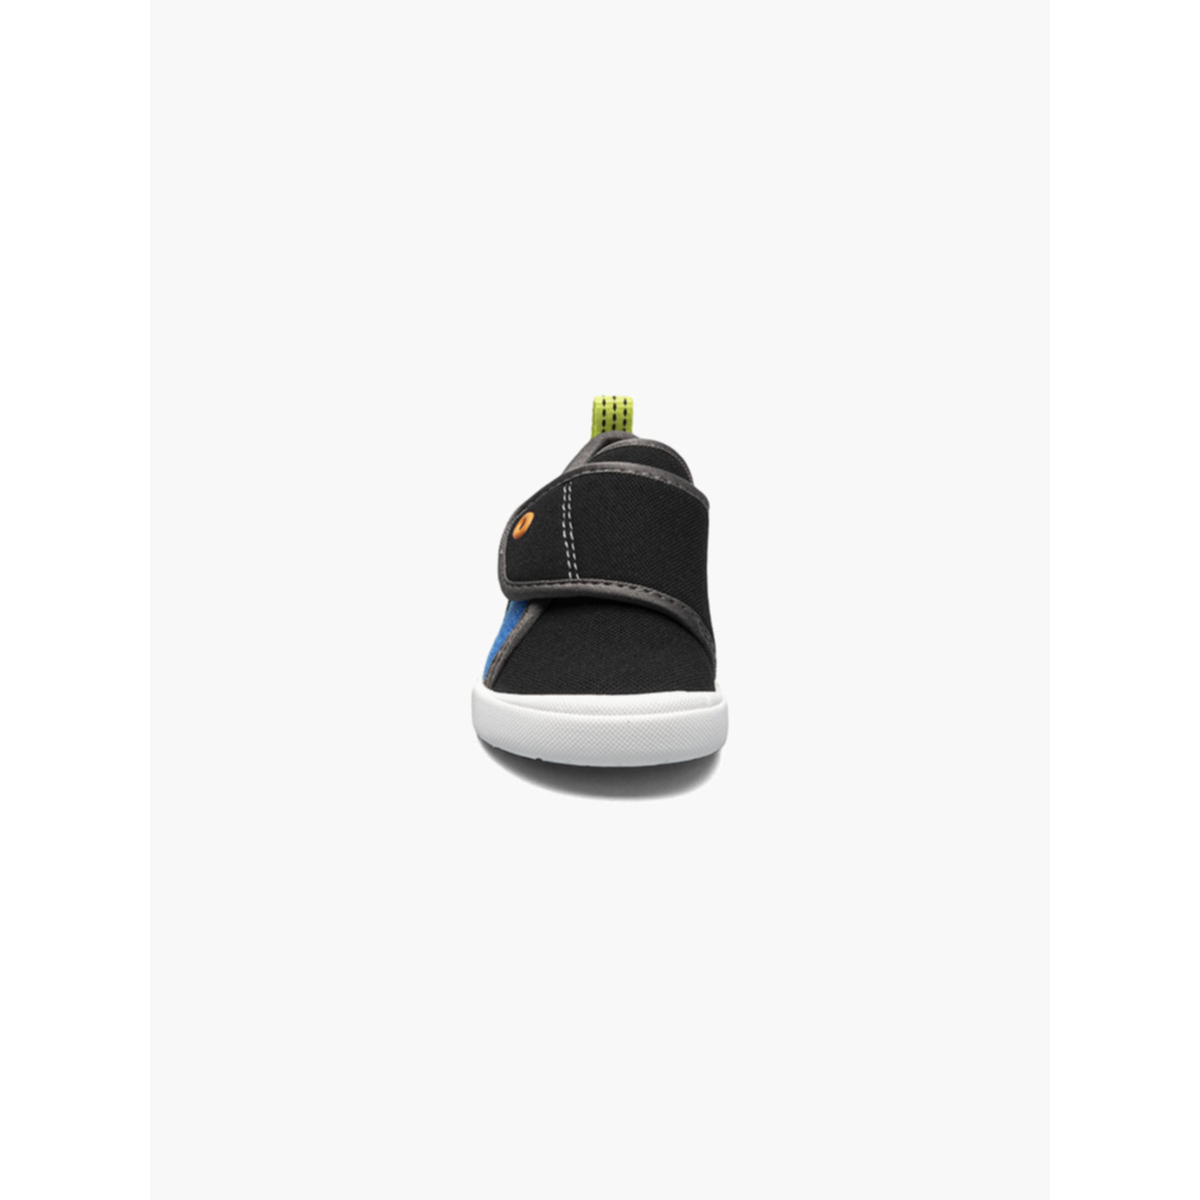 BOGS Unisex Baby Kicker Hook And Loop Shoe Sneaker Black Multi - 72811I-009 1 BLACK MULTI - BLACK MULTI, 8 Little Kid